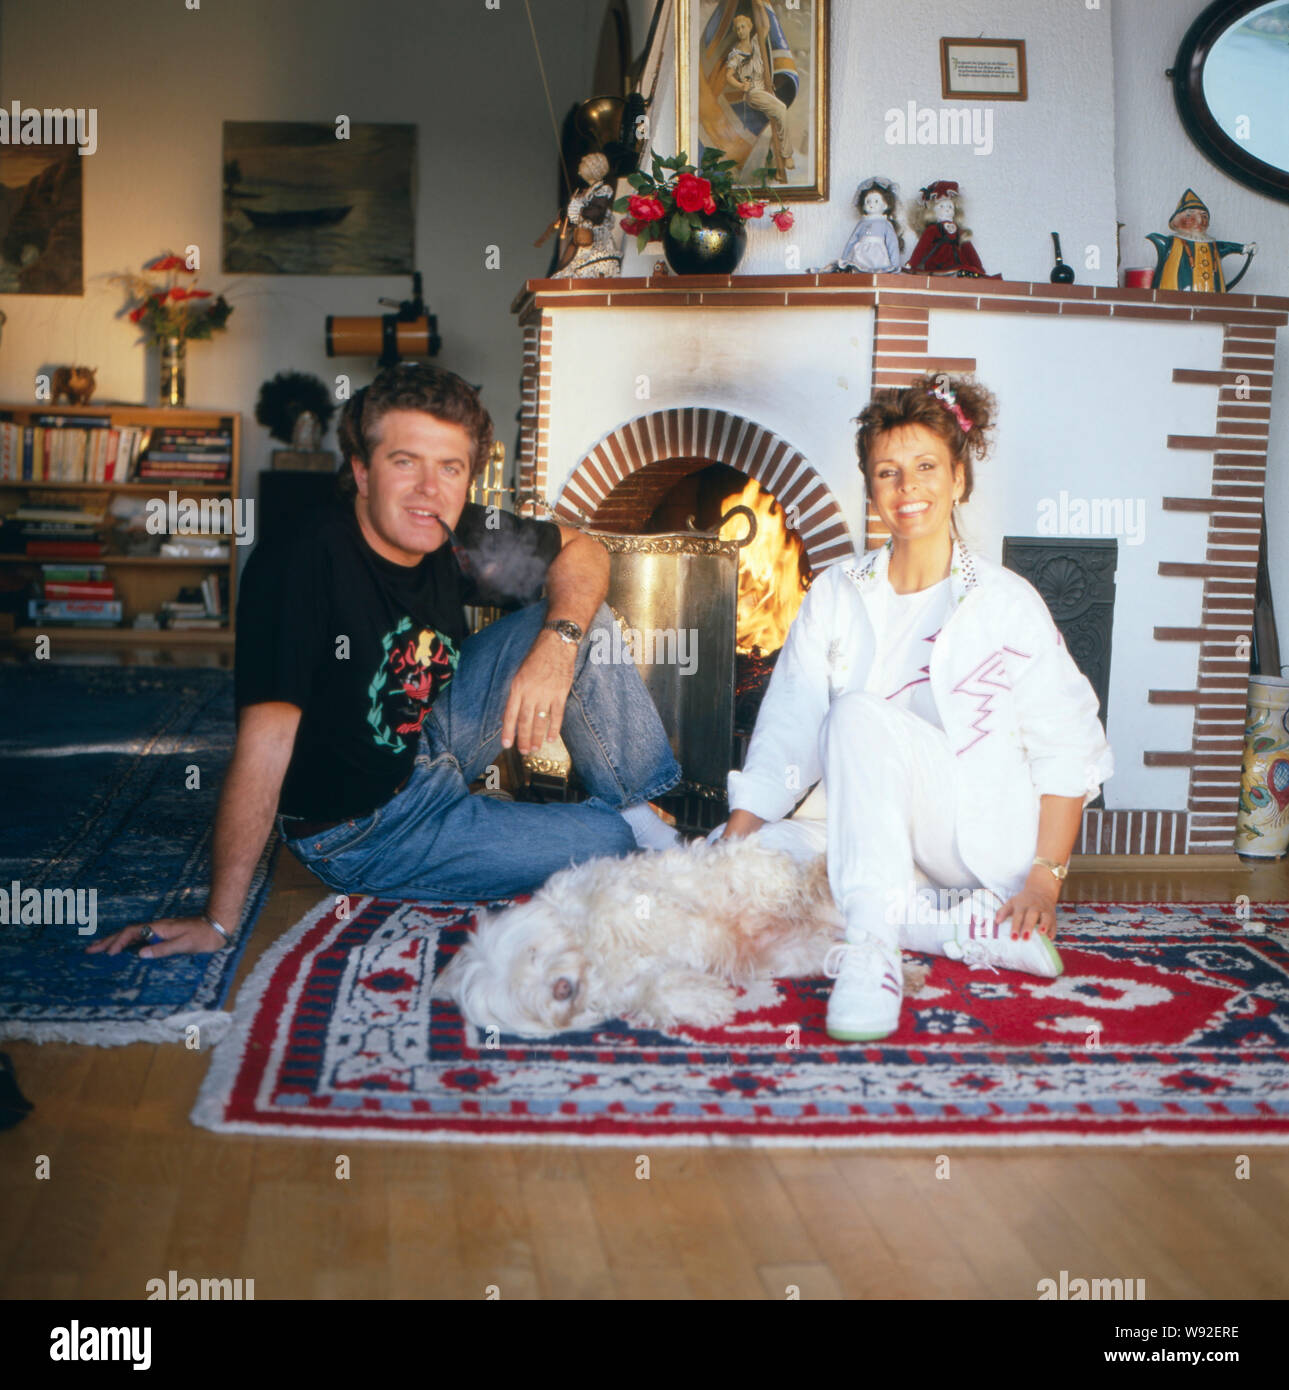 Die deusch-britische Schlagersängerin Ireen Sheer mit ihrem Ehemann Gavin du Porter posieren vor einem Kamin, ca. 1988. L'anglo-tedesco cantante pop Ireen Sheer e suo marito Gavin du Porter pongono davanti a un caminetto, ca. 1988. Foto Stock